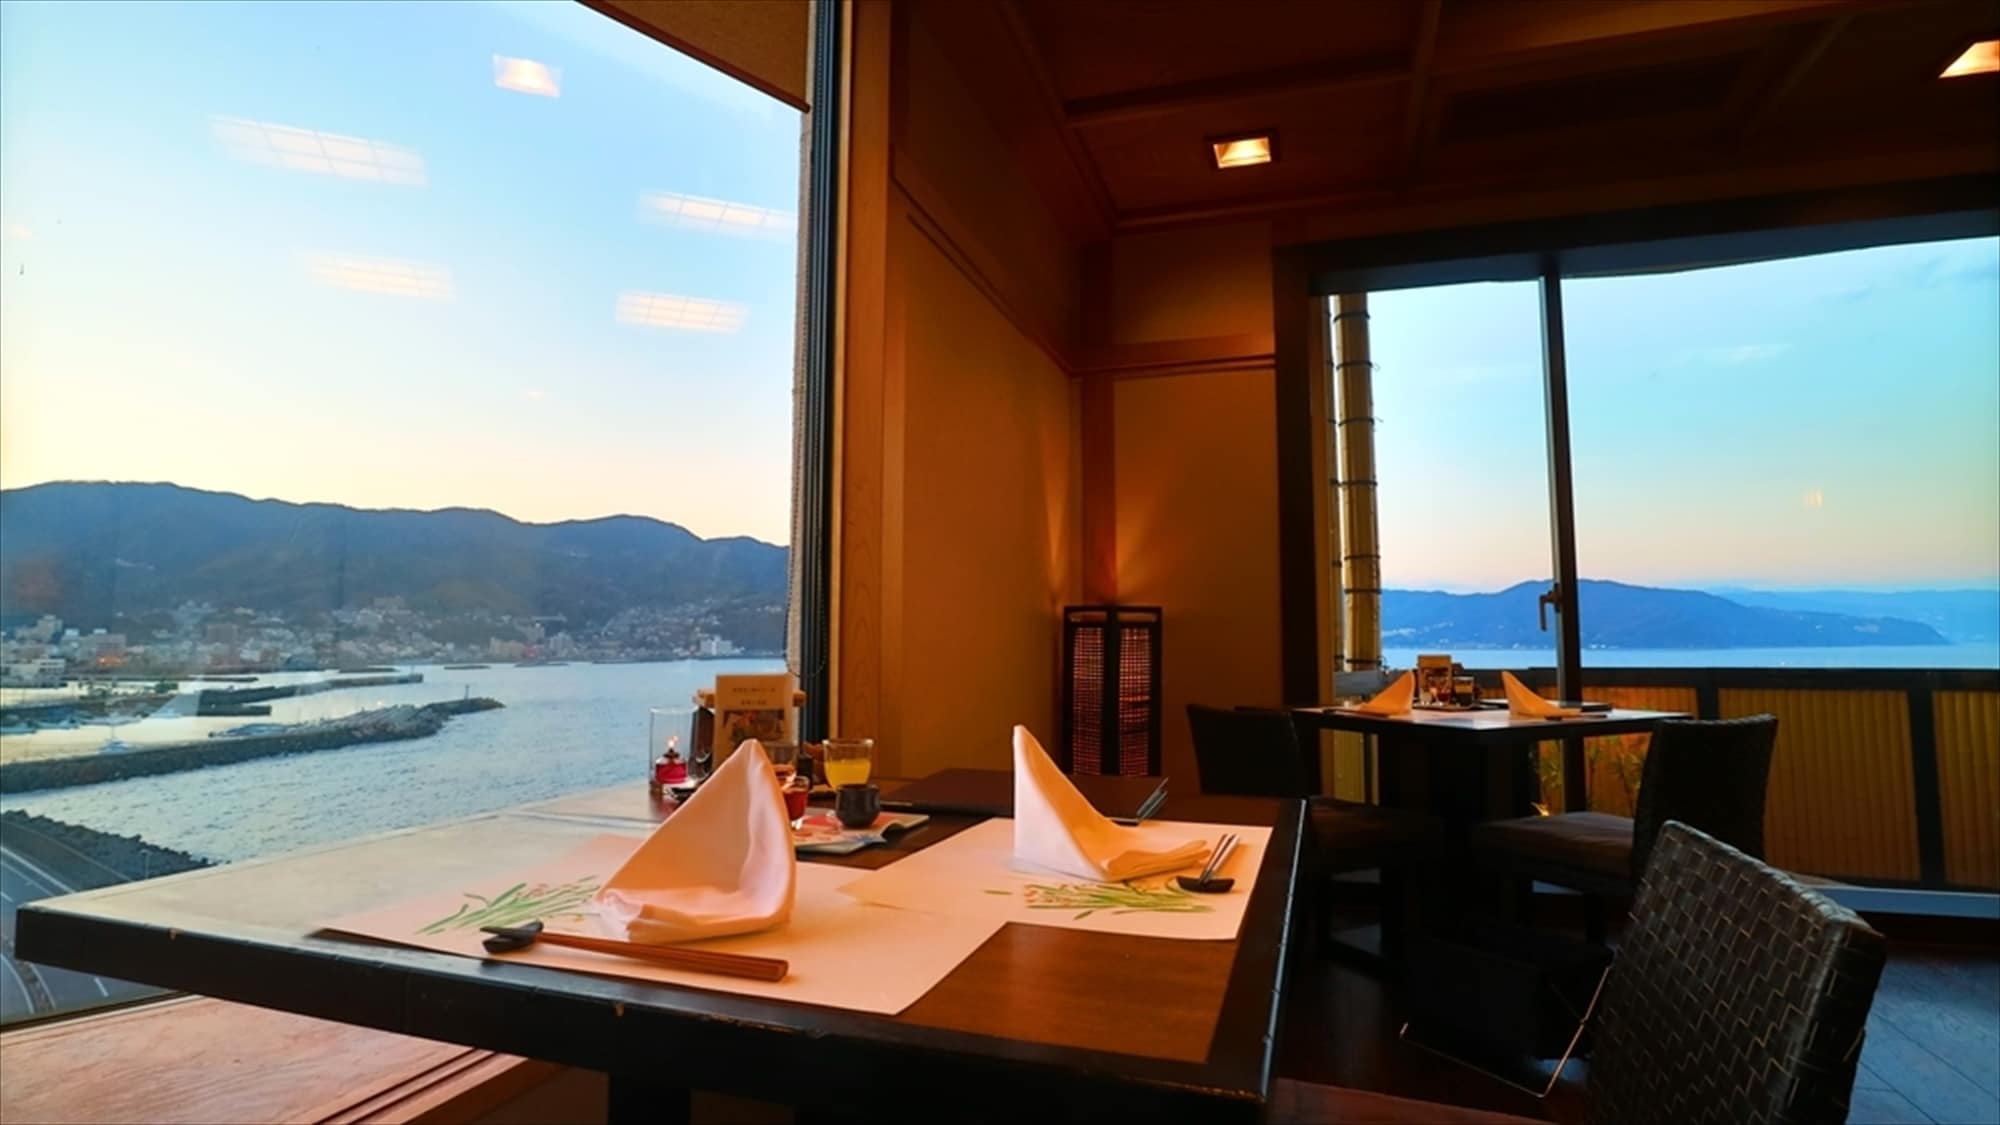 [9樓餐廳-Aomi-] 一邊從窗戶俯瞰相模灘的壯麗景色一邊享用美食。